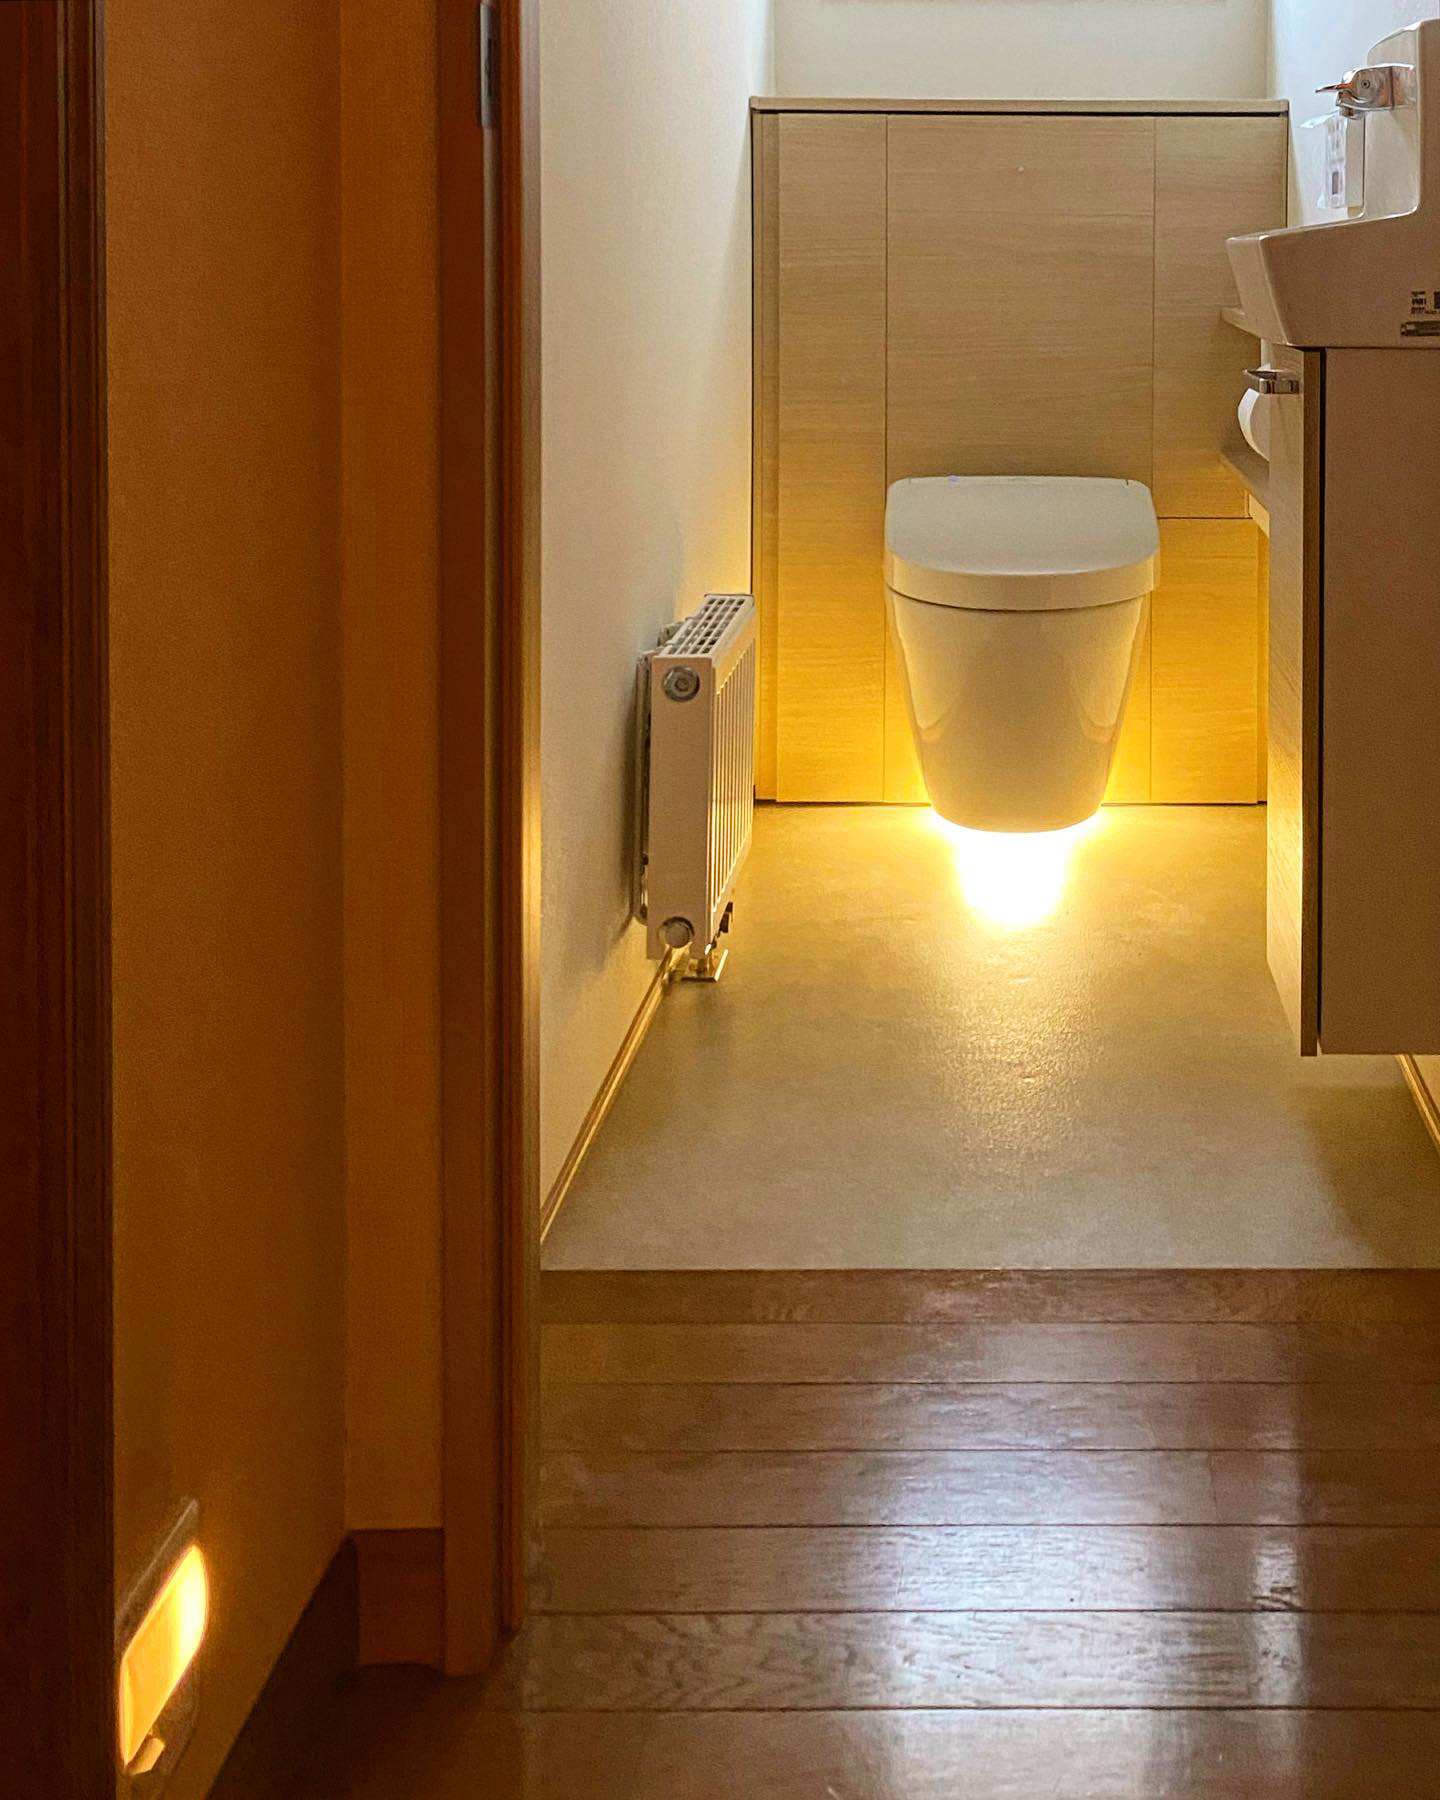 フローティングデザインのトイレはフロアライトで浮遊感を演出するとともに個室に広がりをもたらせた。